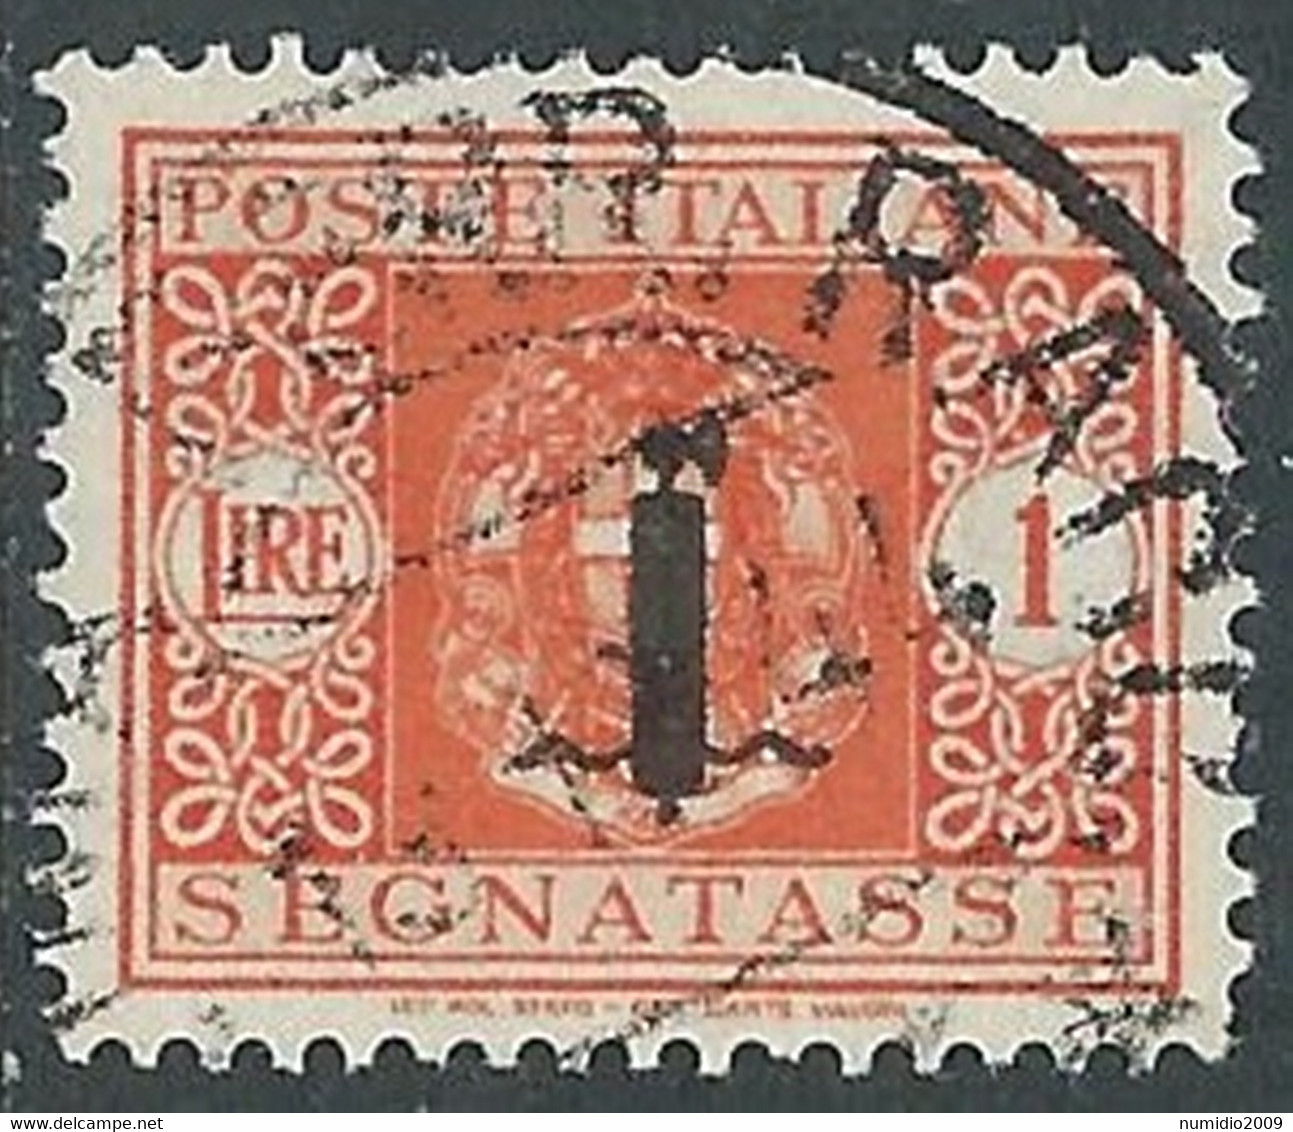 1944 RSI SEGNATASSE USATO 1 LIRA - RE28-10 - Taxe